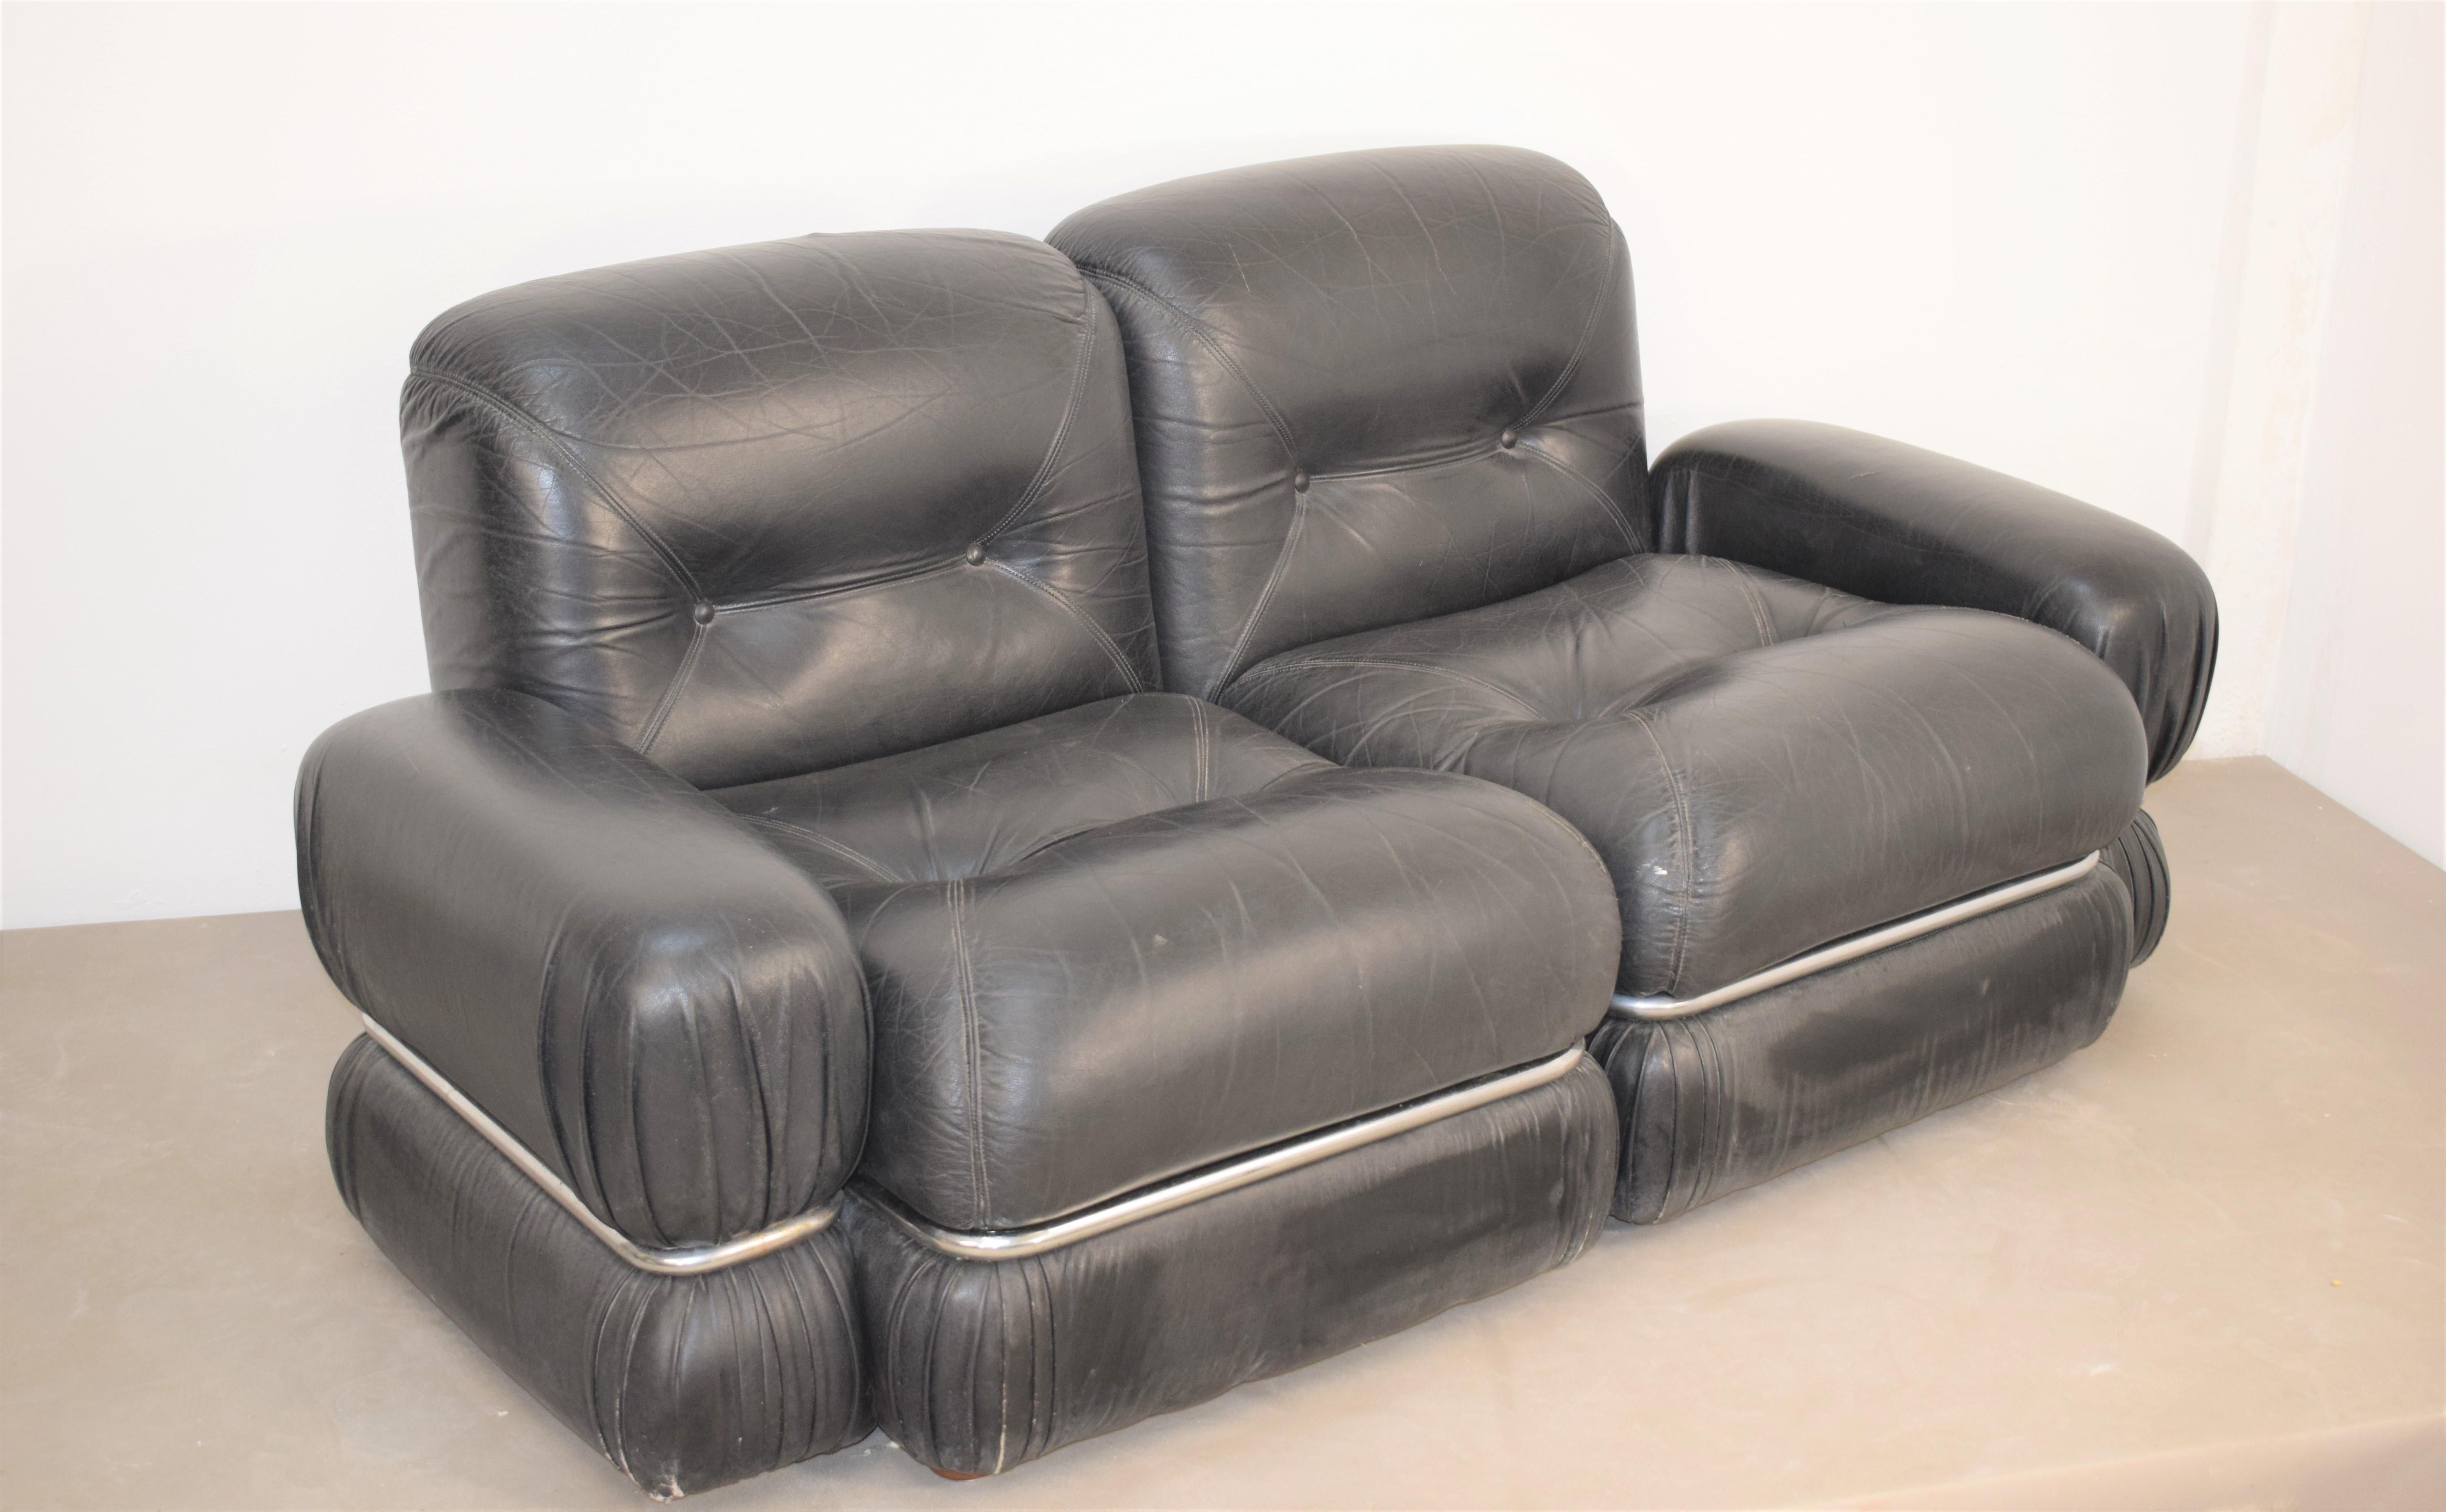 Italienisches Sofa, 1970er Jahre .
Abmessungen: H= 66 cm; B=150 cm; T= 85cm; Sitzhöhe= 40 cm.